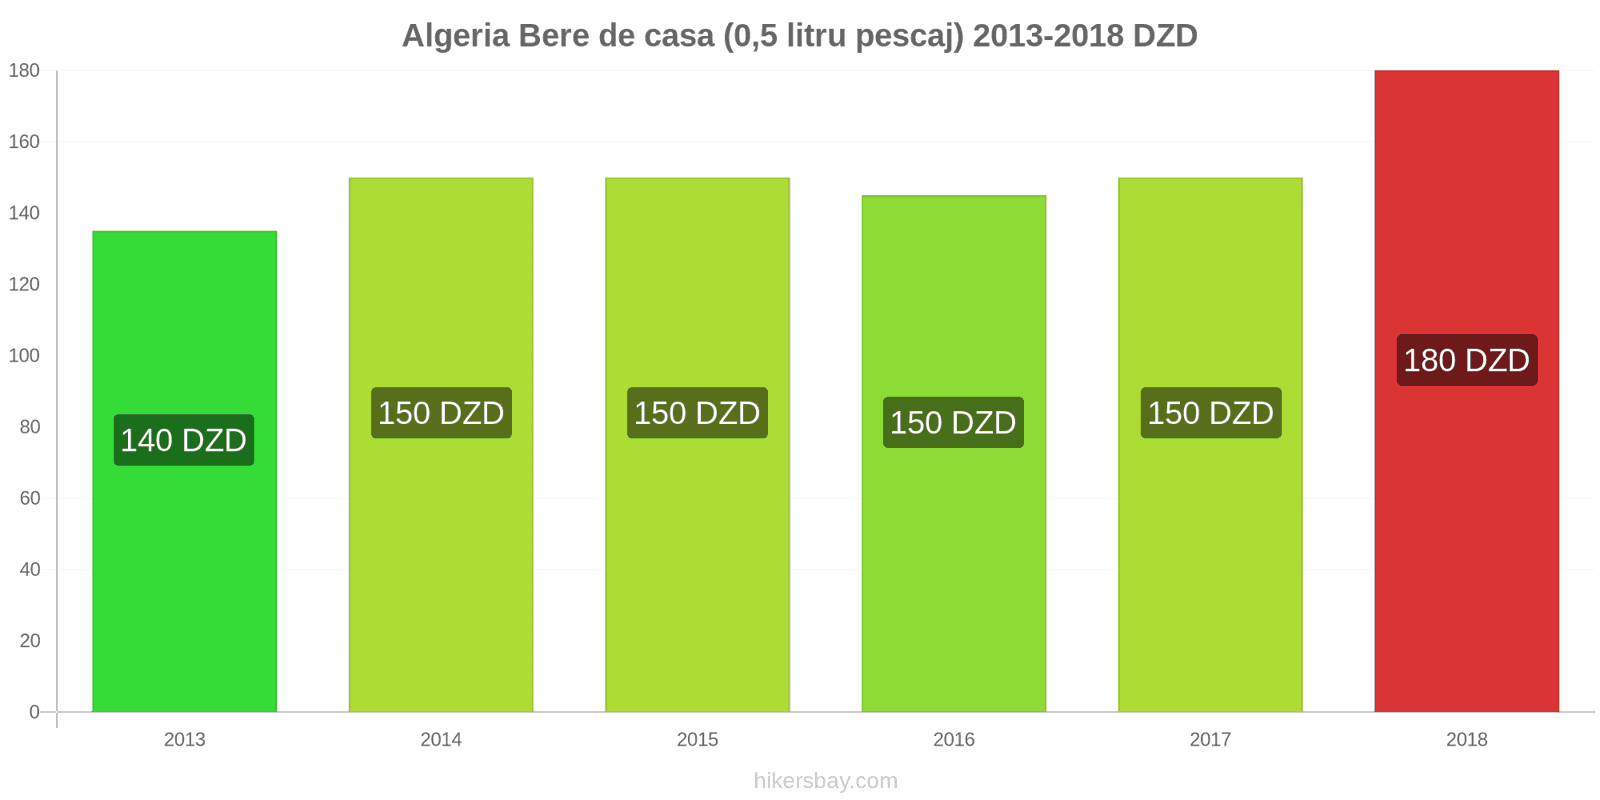 Algeria schimbări de prețuri Bere la halbă (0,5 litri) hikersbay.com